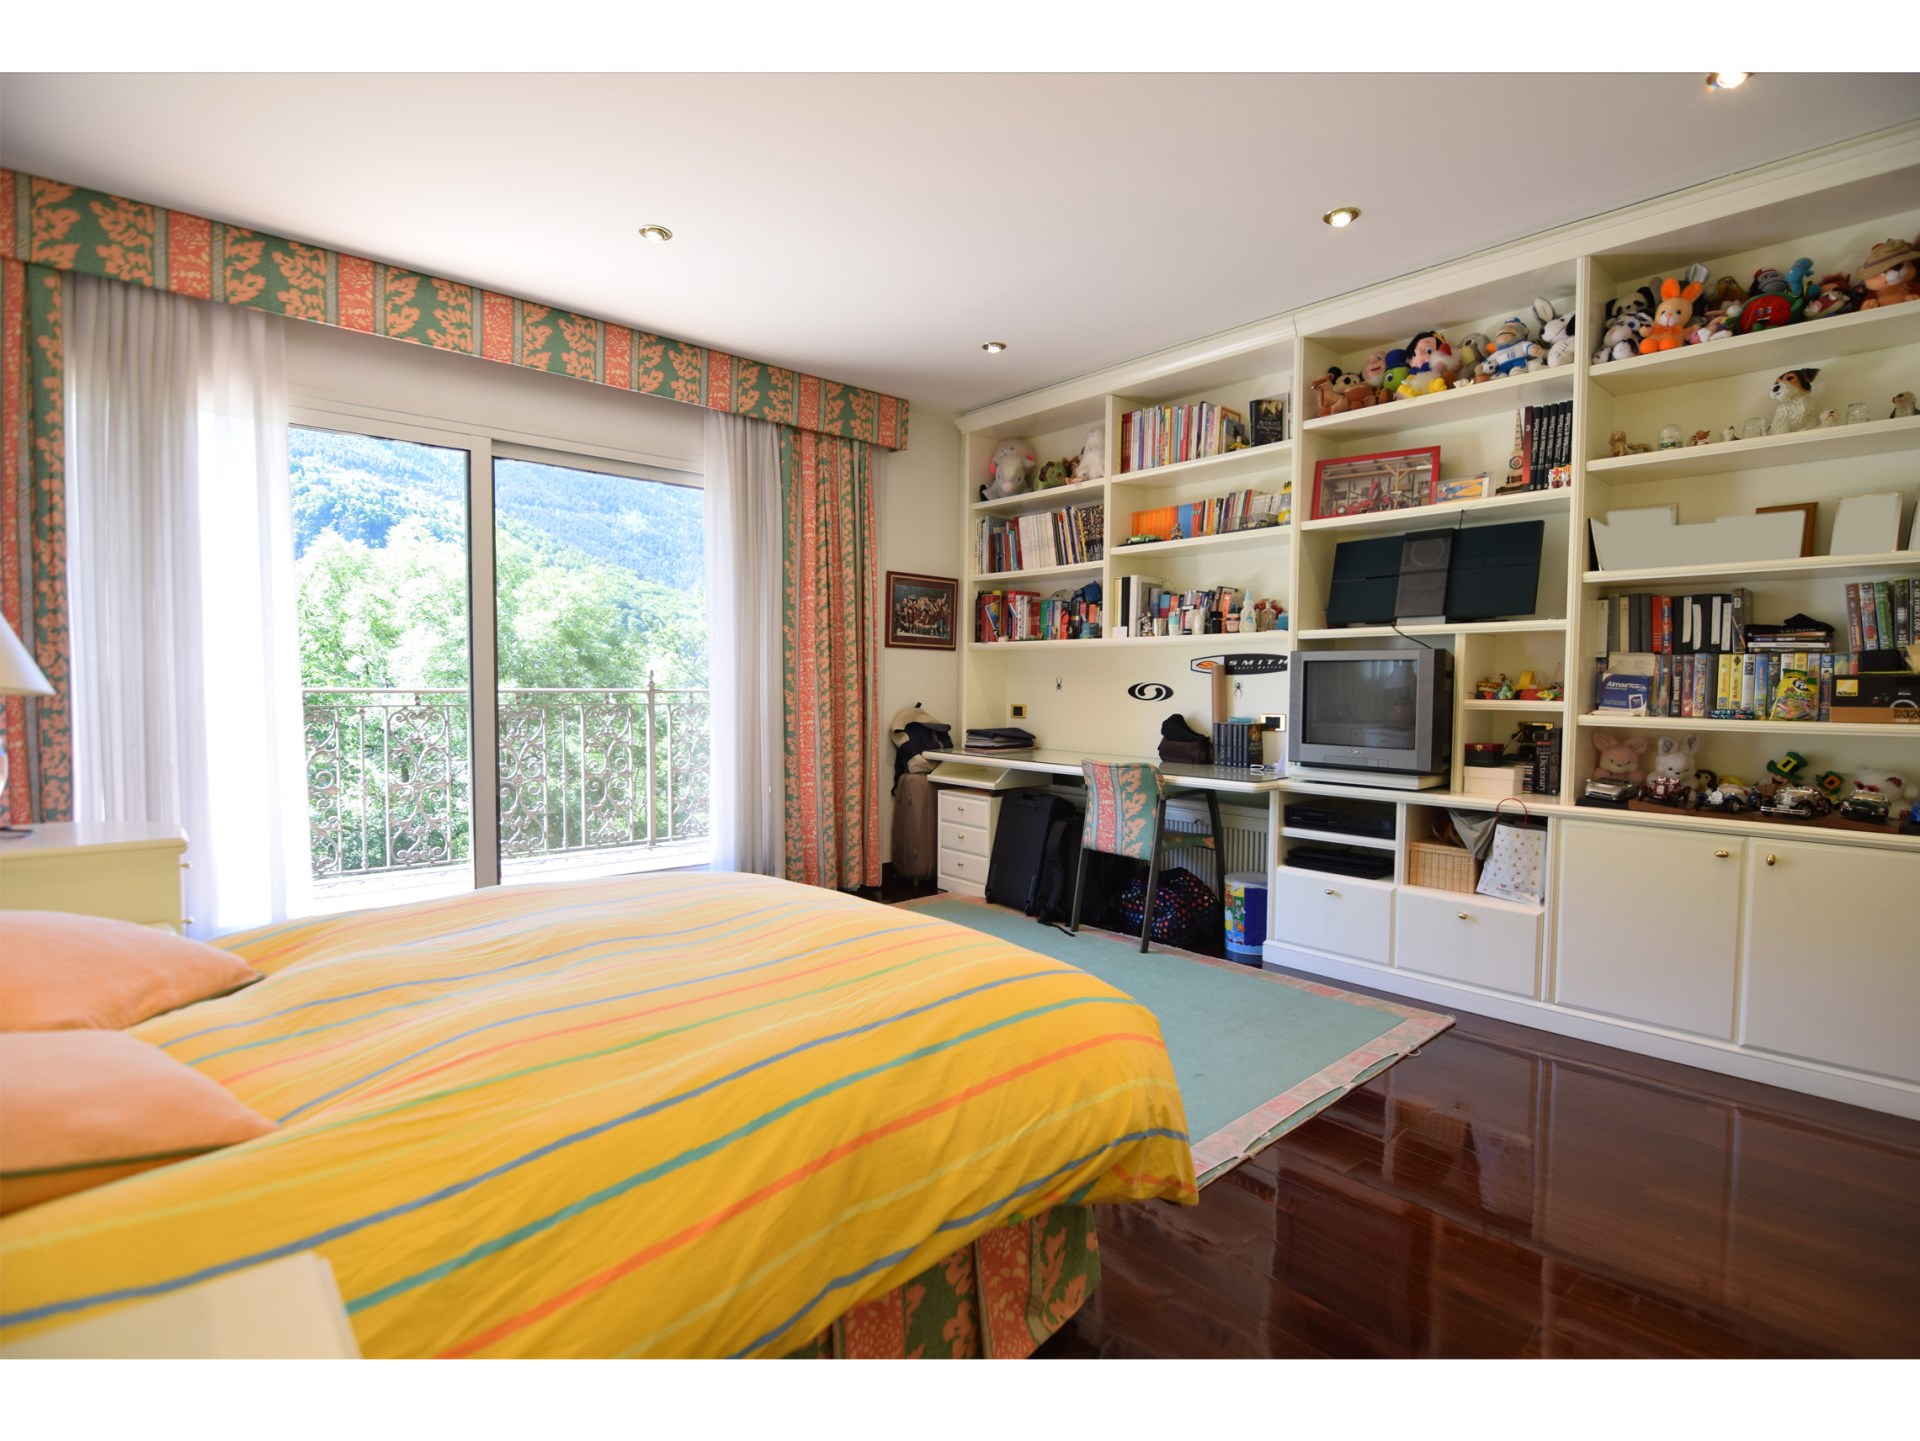 Chalet en venta en Andorra la Vella, 5 habitaciones, 908 metros